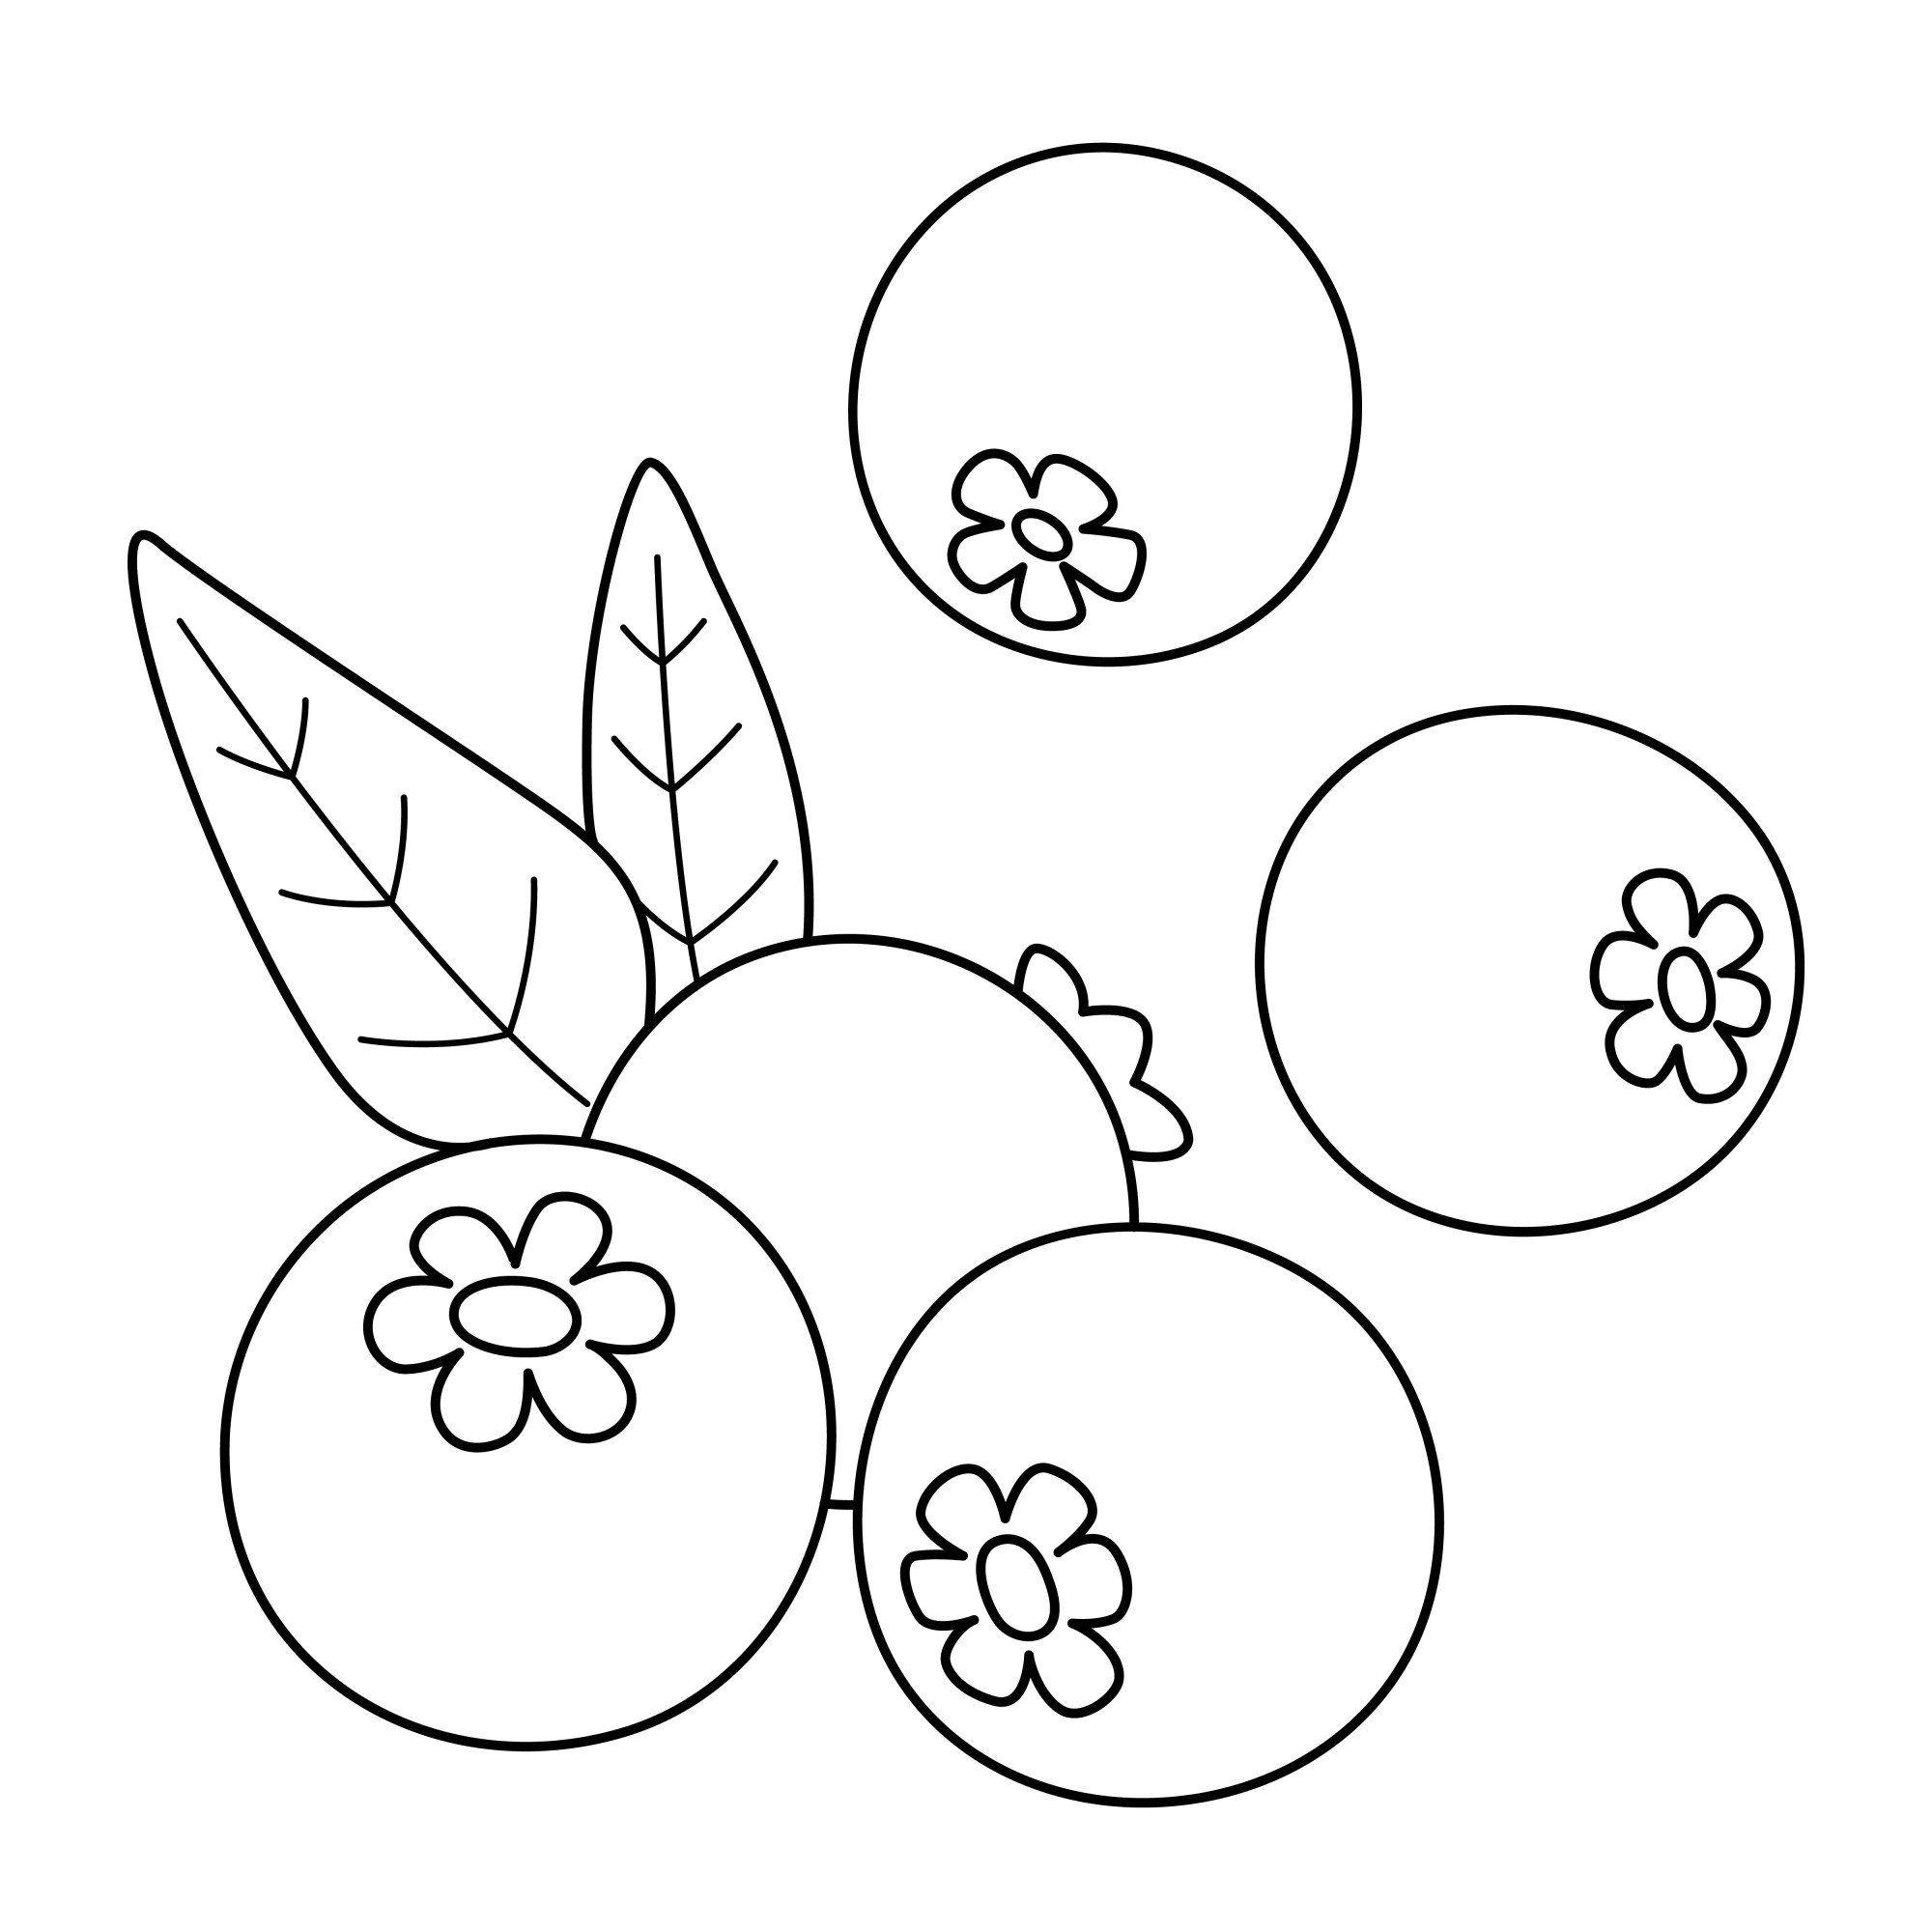 Раскраска для детей: ягоды спелой черники